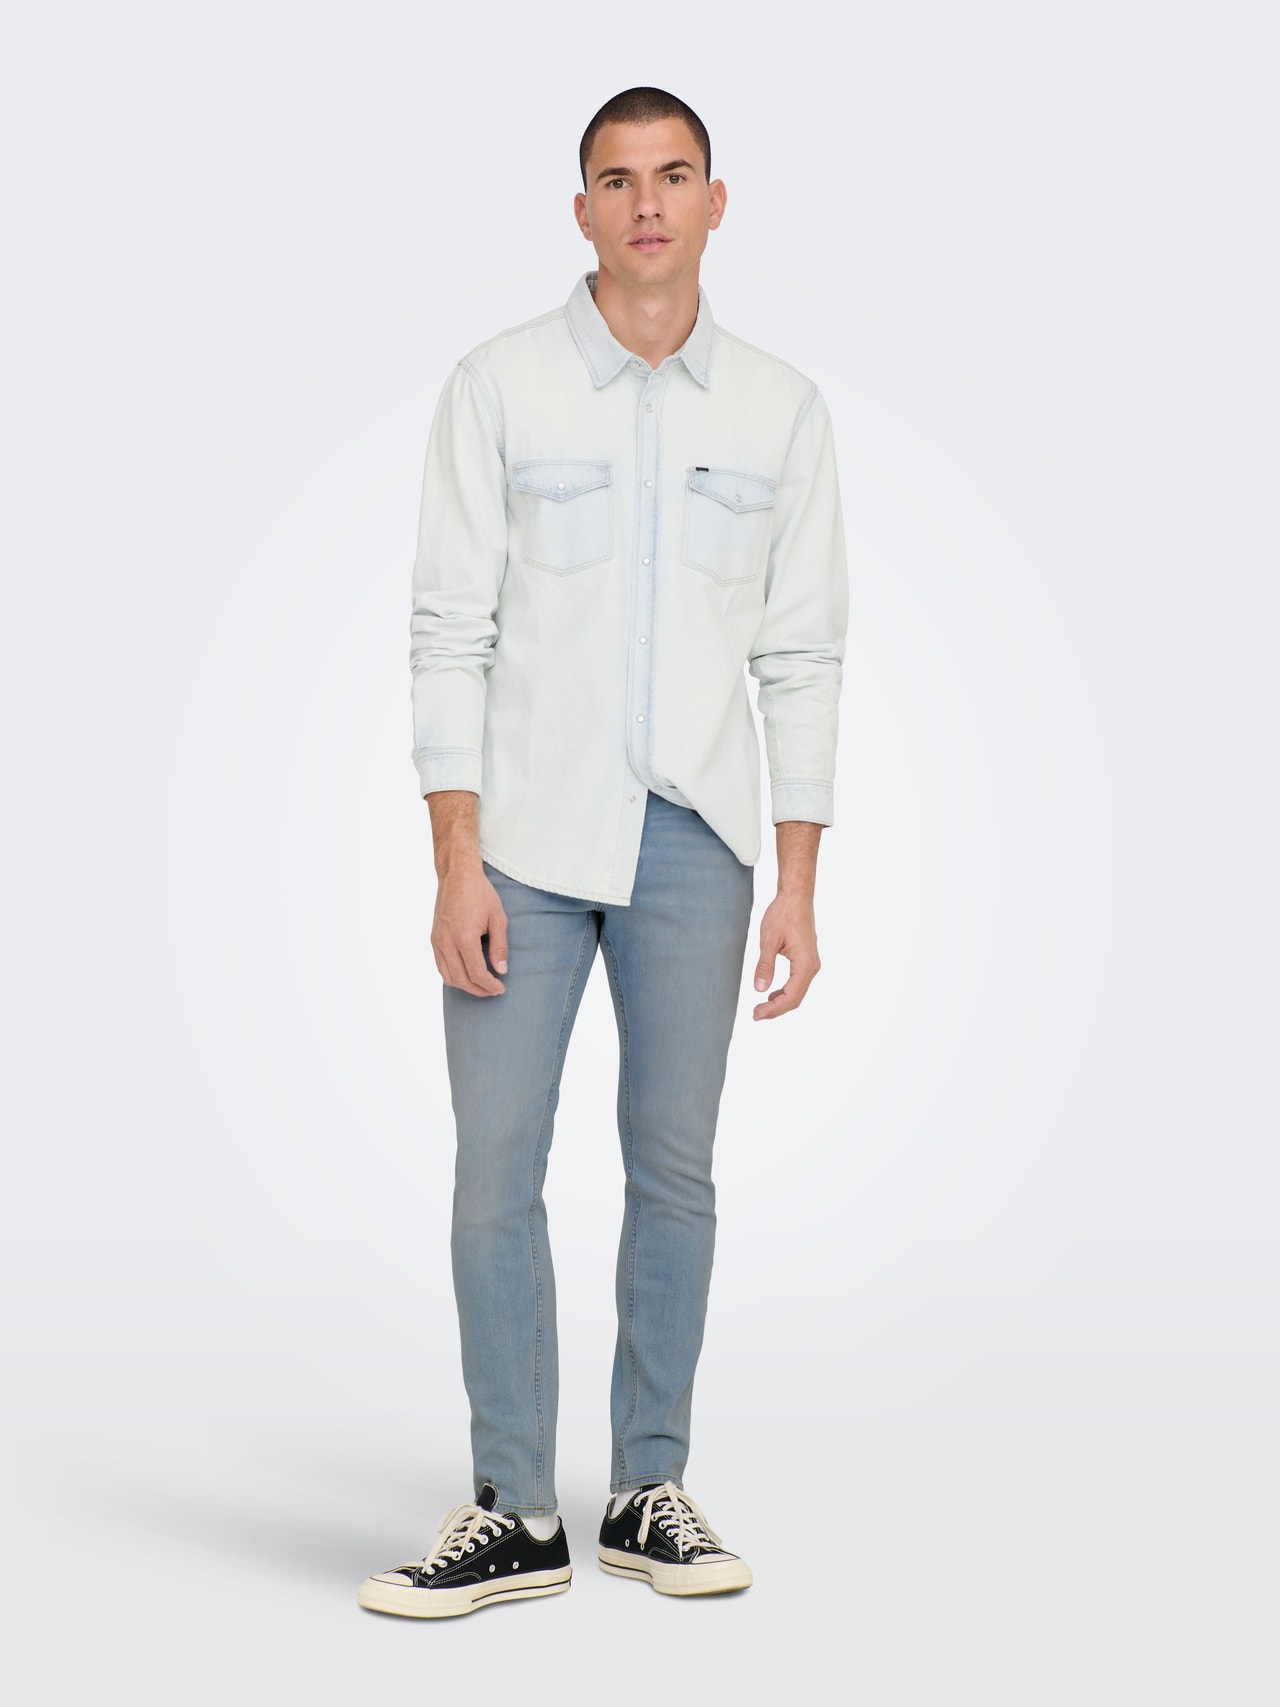 ONLY & SONS Slim Fit Jeans -Light Blue Denim - 22024924